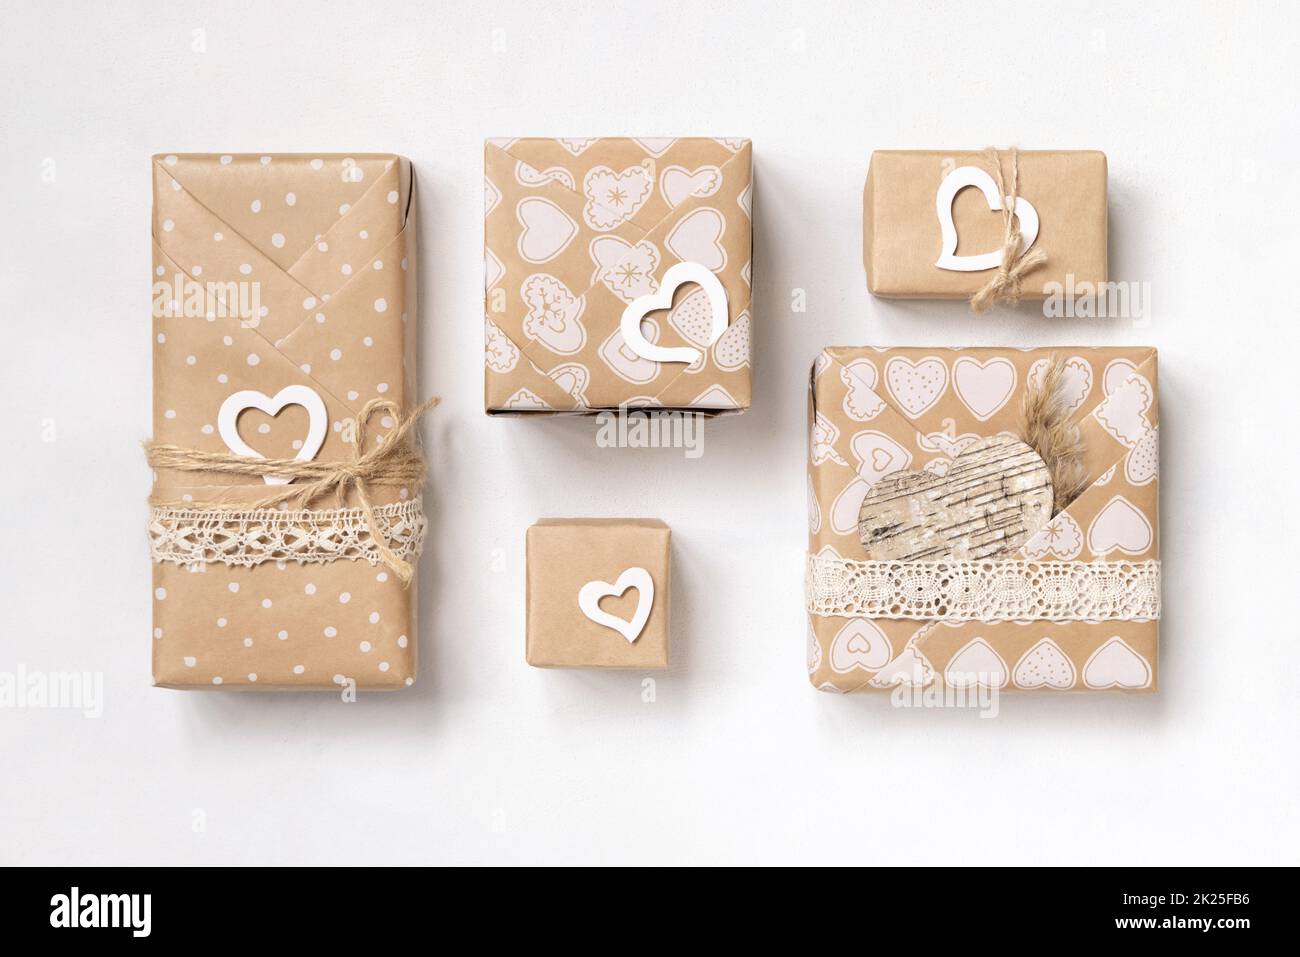 Les cadeaux de la Saint-Valentin sont décorés de dentelle vintage, de coeurs et de pampass avec vue sur le dessus Banque D'Images